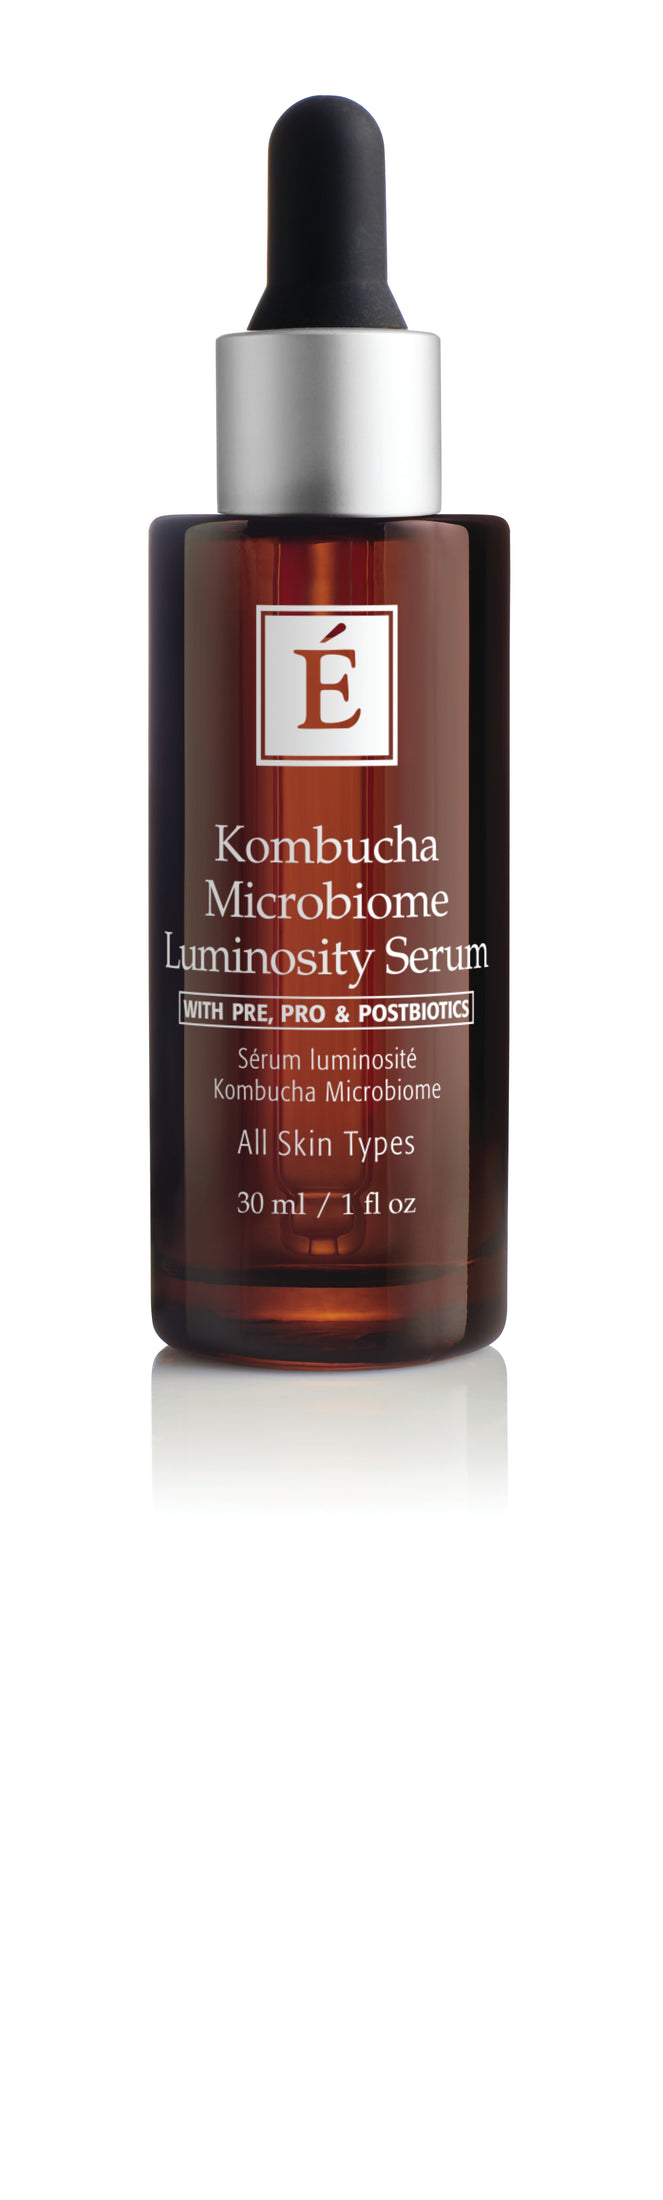 Load image into Gallery viewer, Kombucha Microbiome Luminosity Serum
